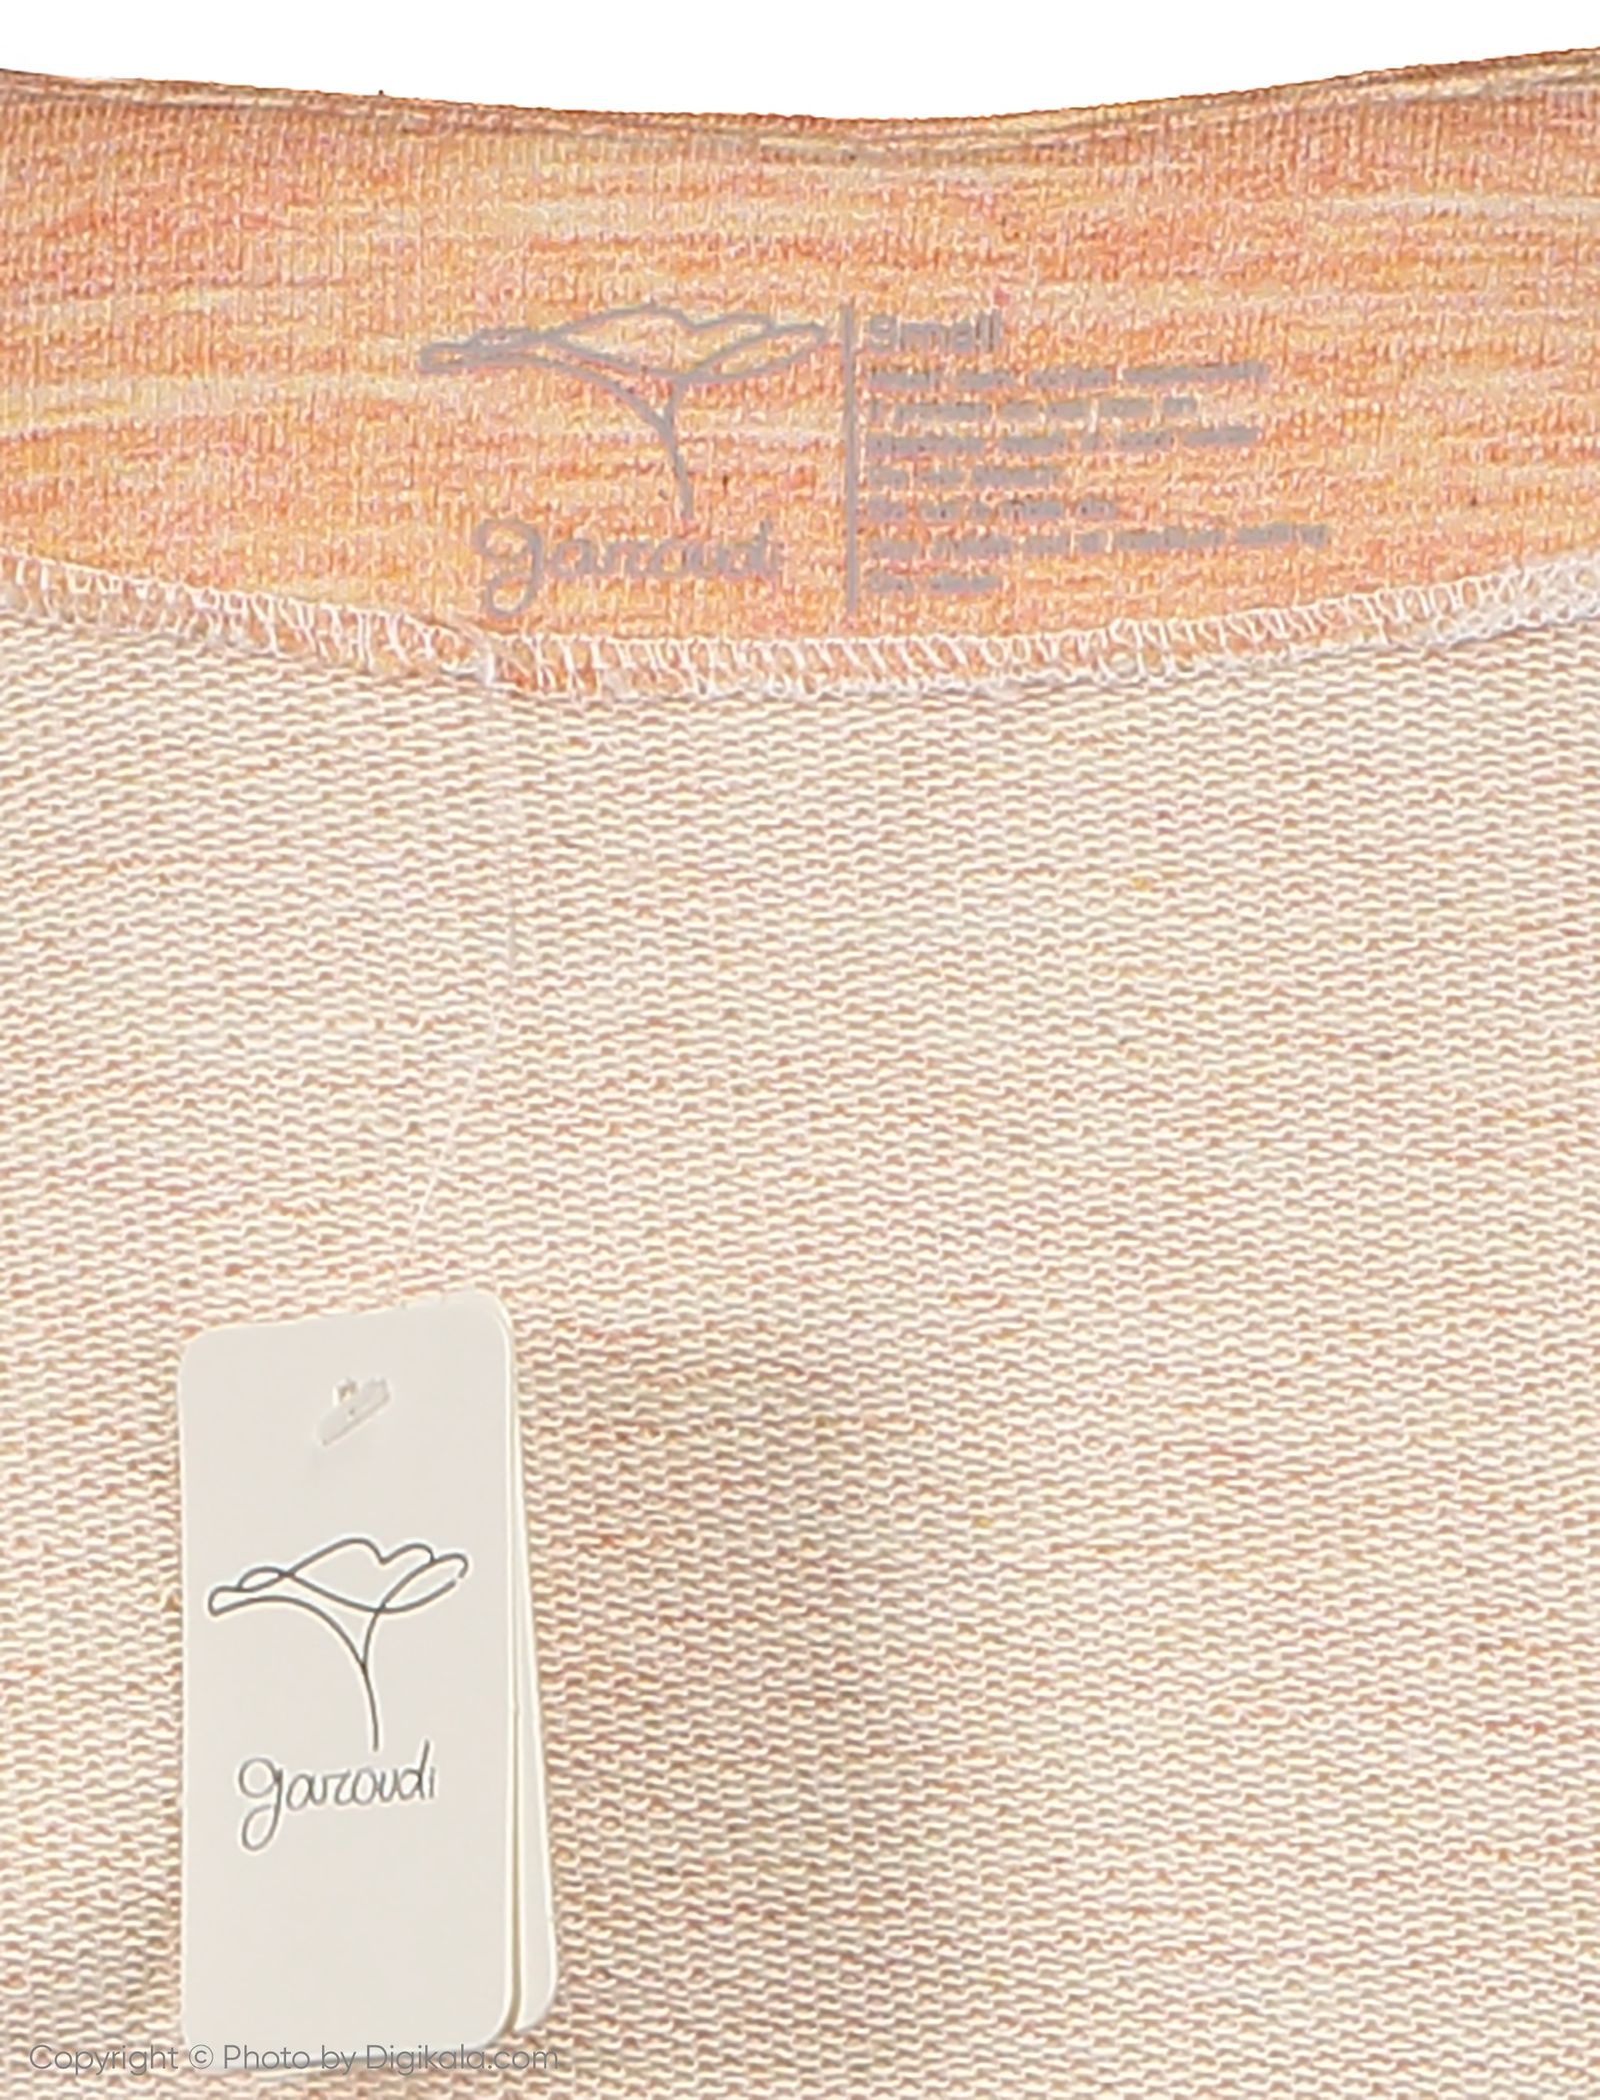 تی شرت زنانه گارودی مدل 1003107023-16 - نارنجی - 5